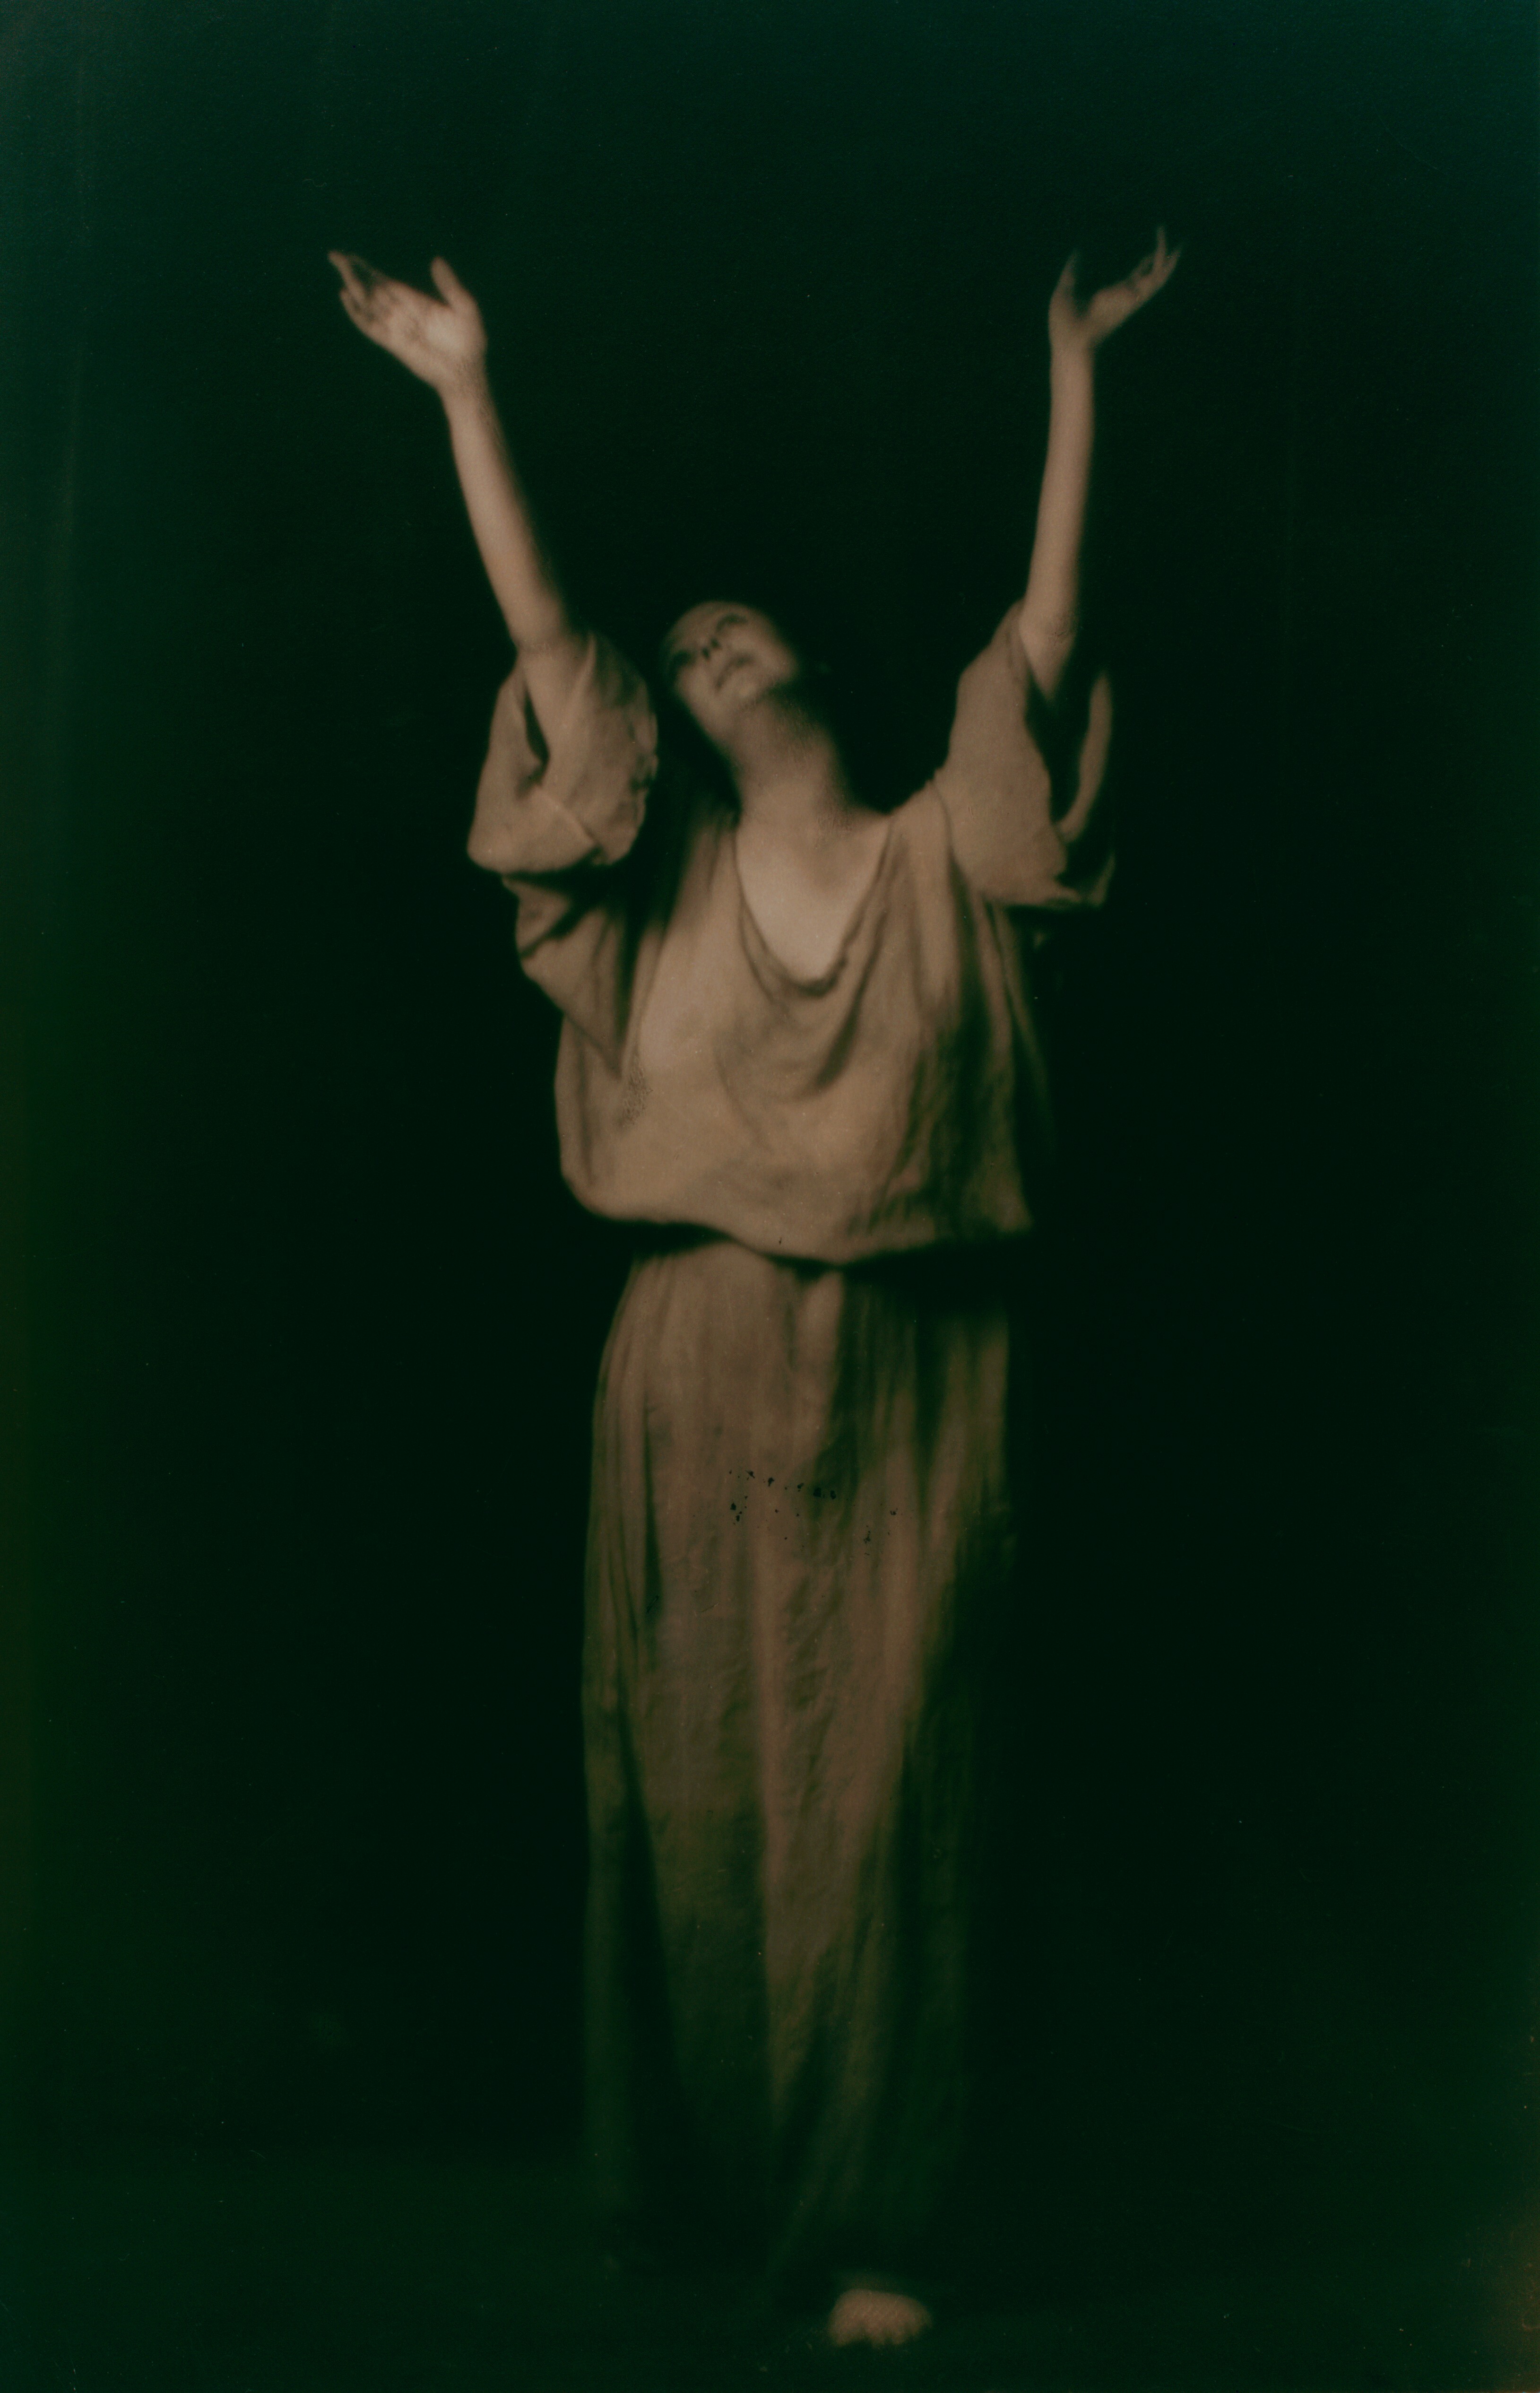 Айседора Дункан, ок. 1915. Фотограф Арнольд Генте